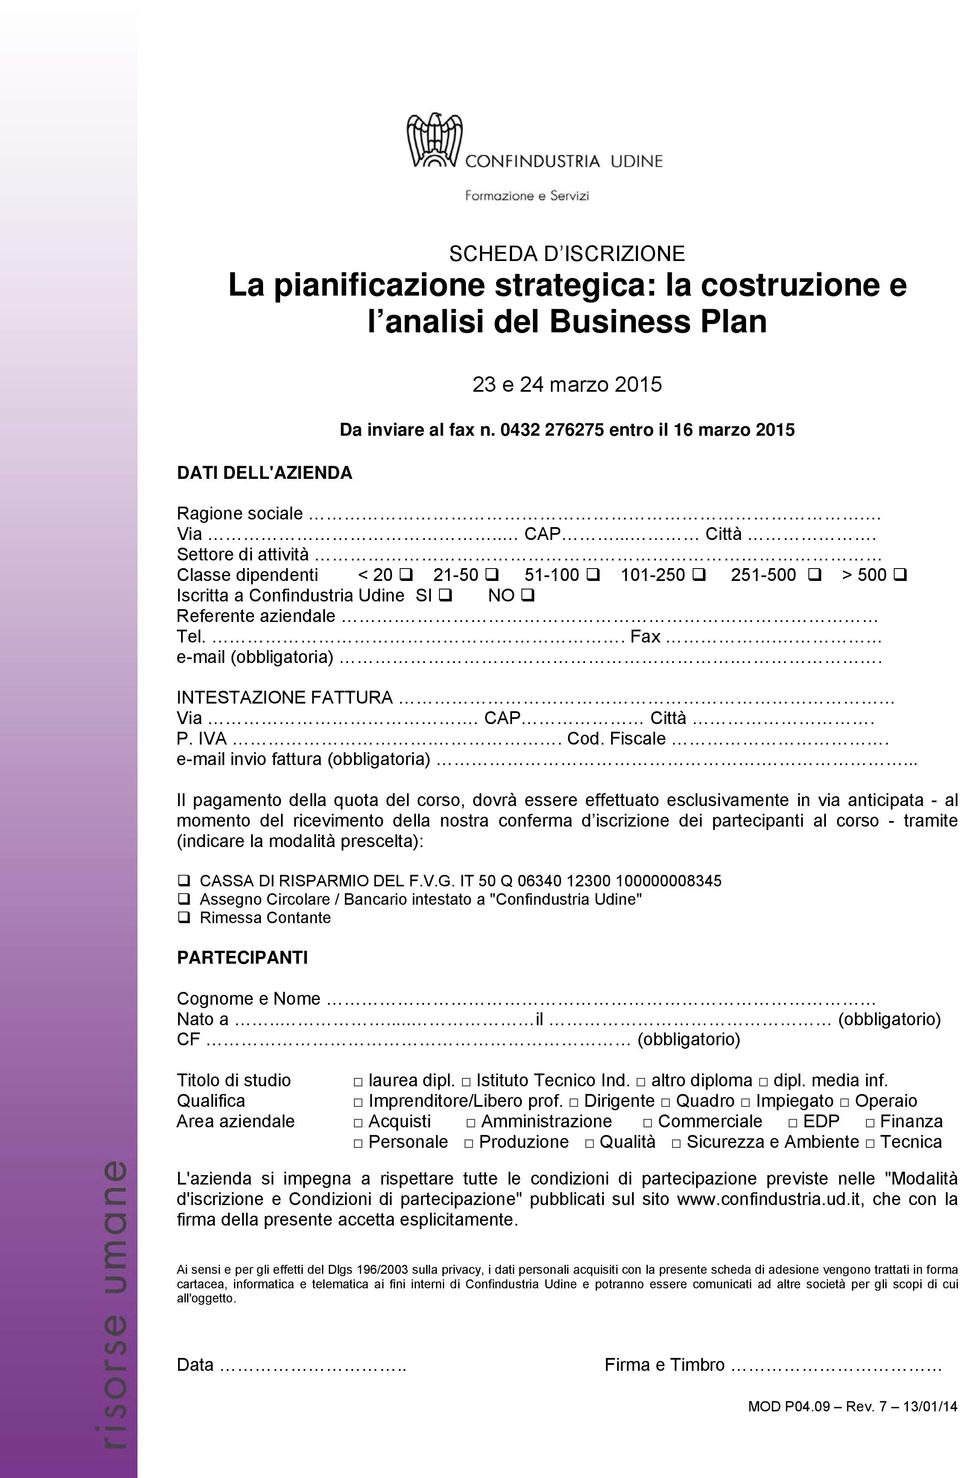 Settore di attività Classe dipendenti < 20 21-50 51-100 101-250 251-500 > 500 Iscritta a Confindustria Udine SI NO Referente aziendale. Tel.. Fax. e-mail (obbligatoria).. INTESTAZIONE FATTURA Via.